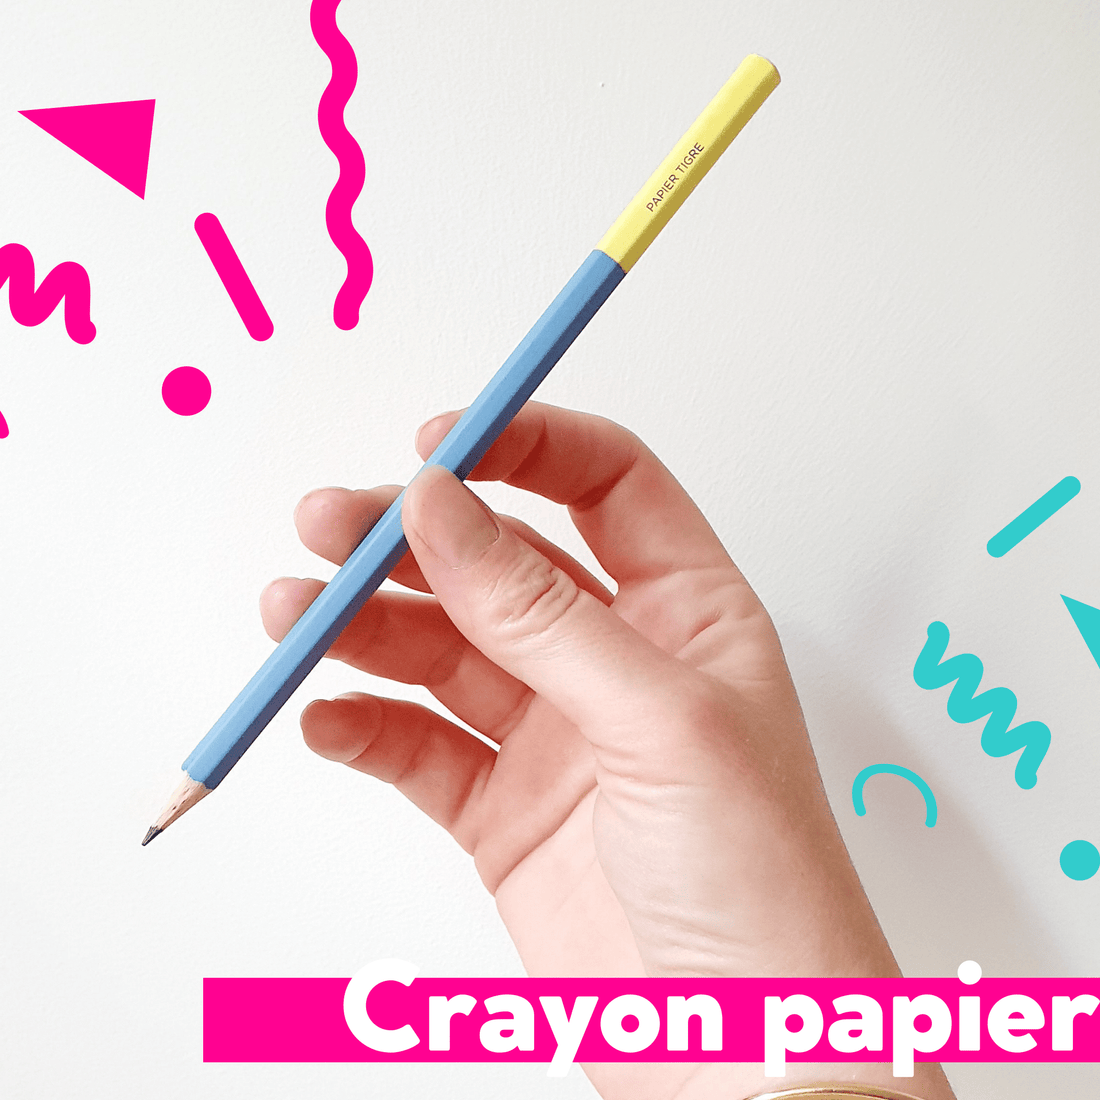 Duo de crayons papier colorés